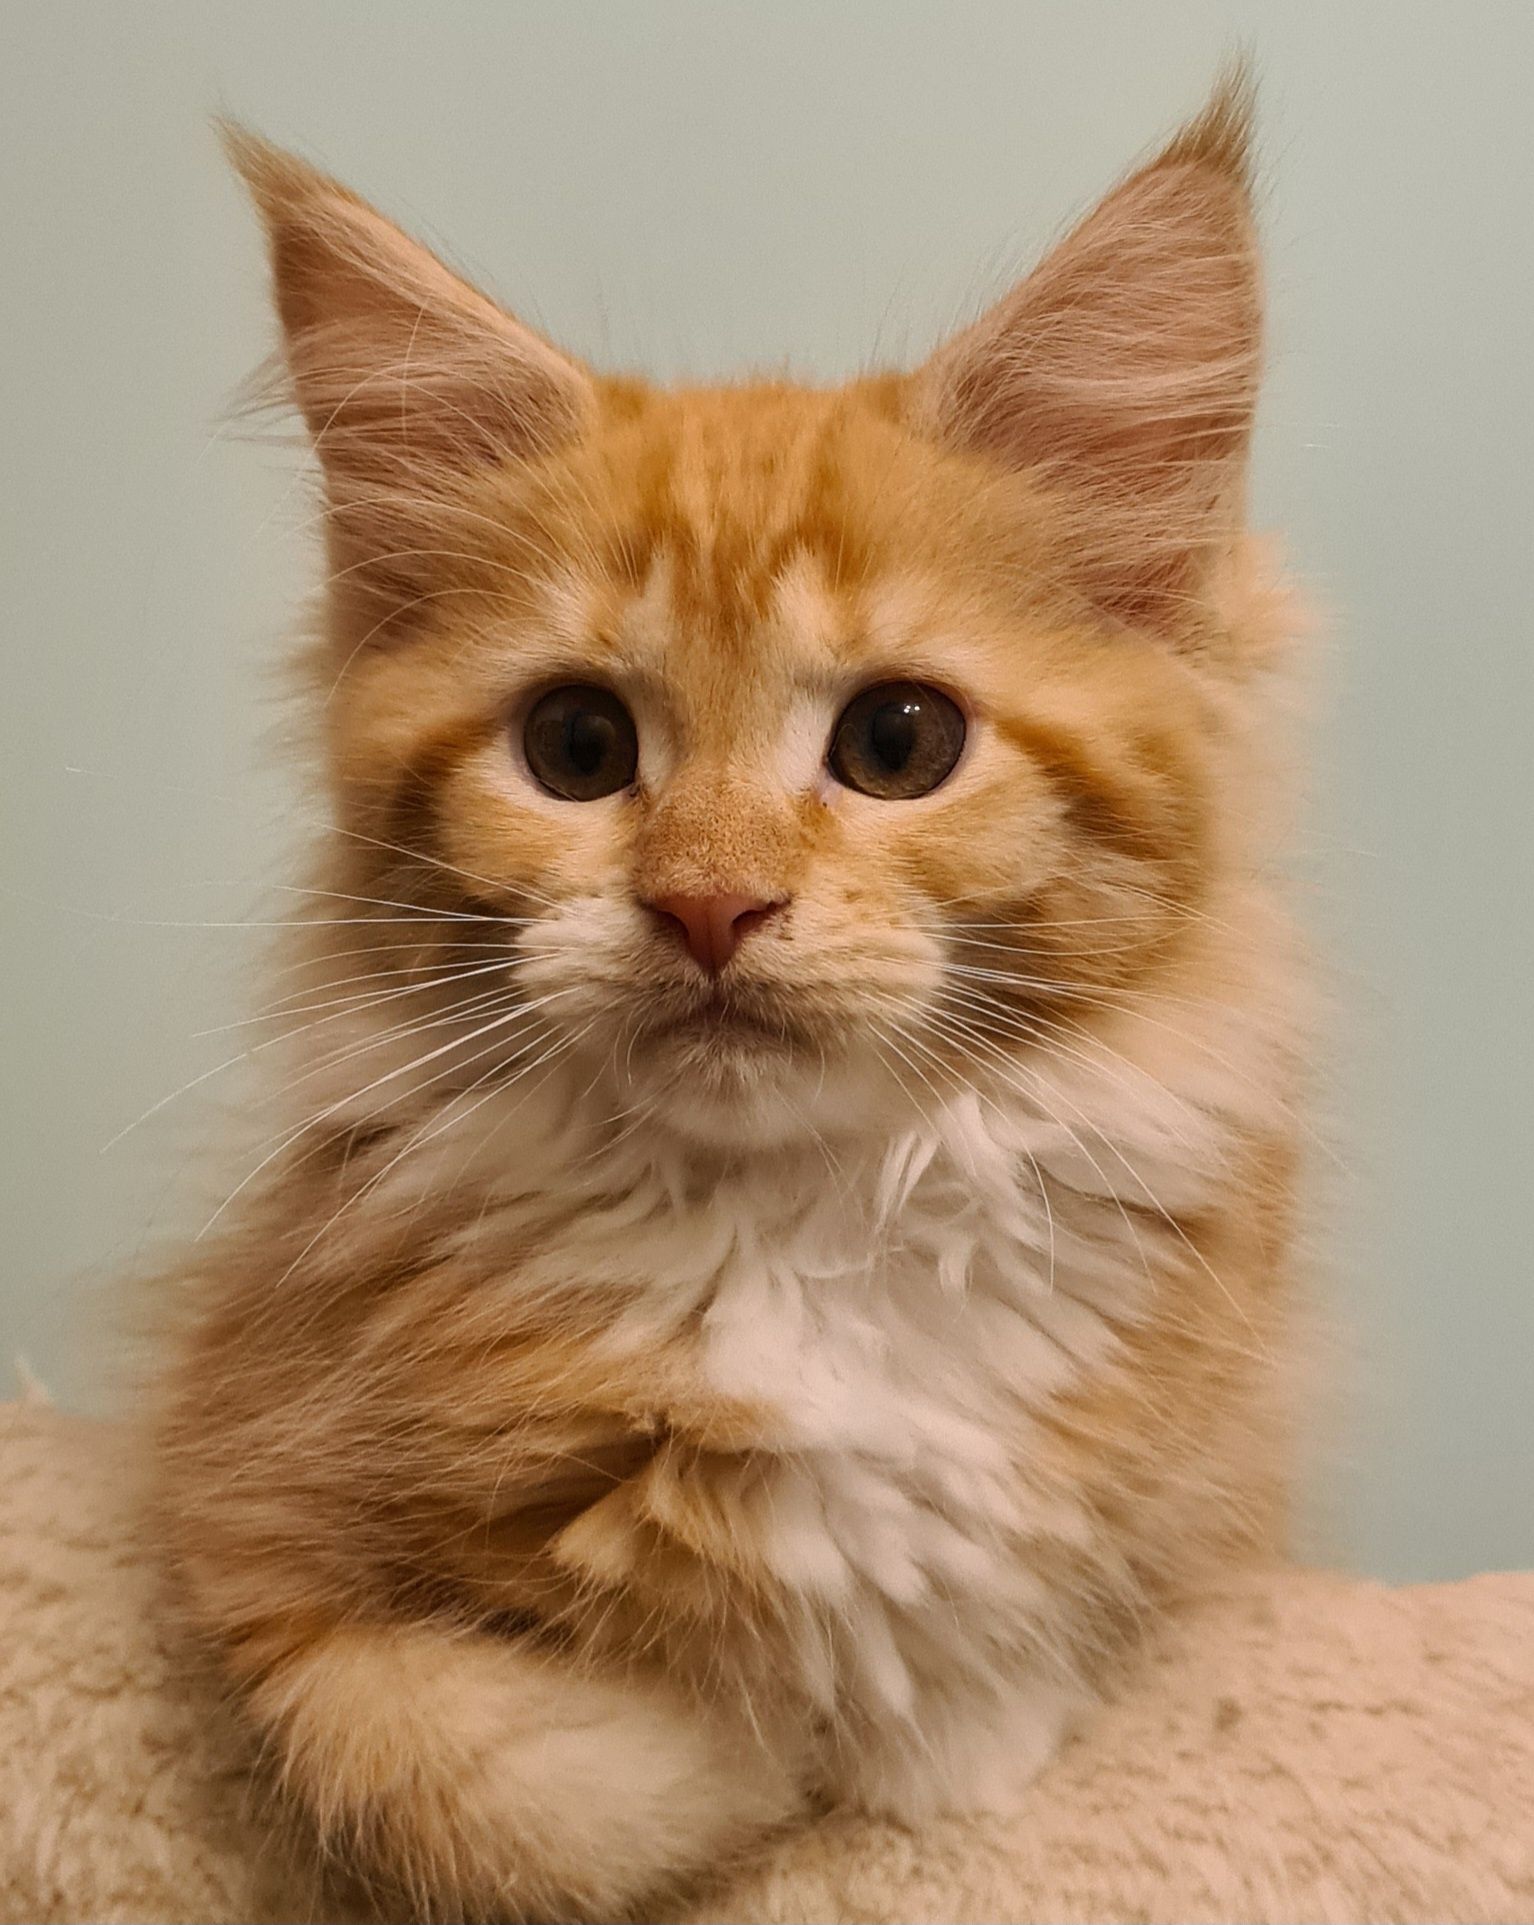 Prześliczna ruda kotka